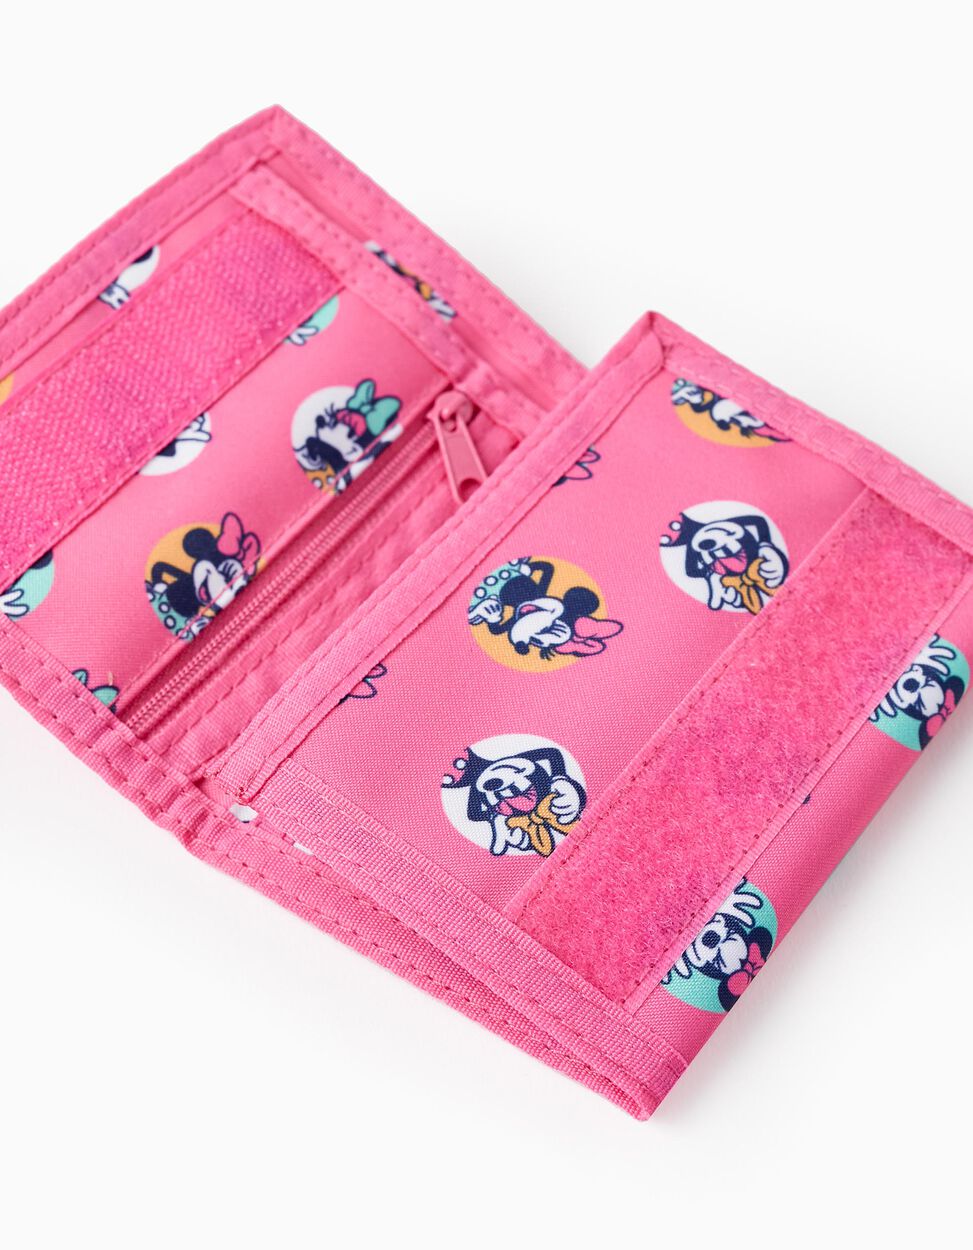 Comprar Online Carteira com Velcro para Menina 'Be More Minnie', Rosa